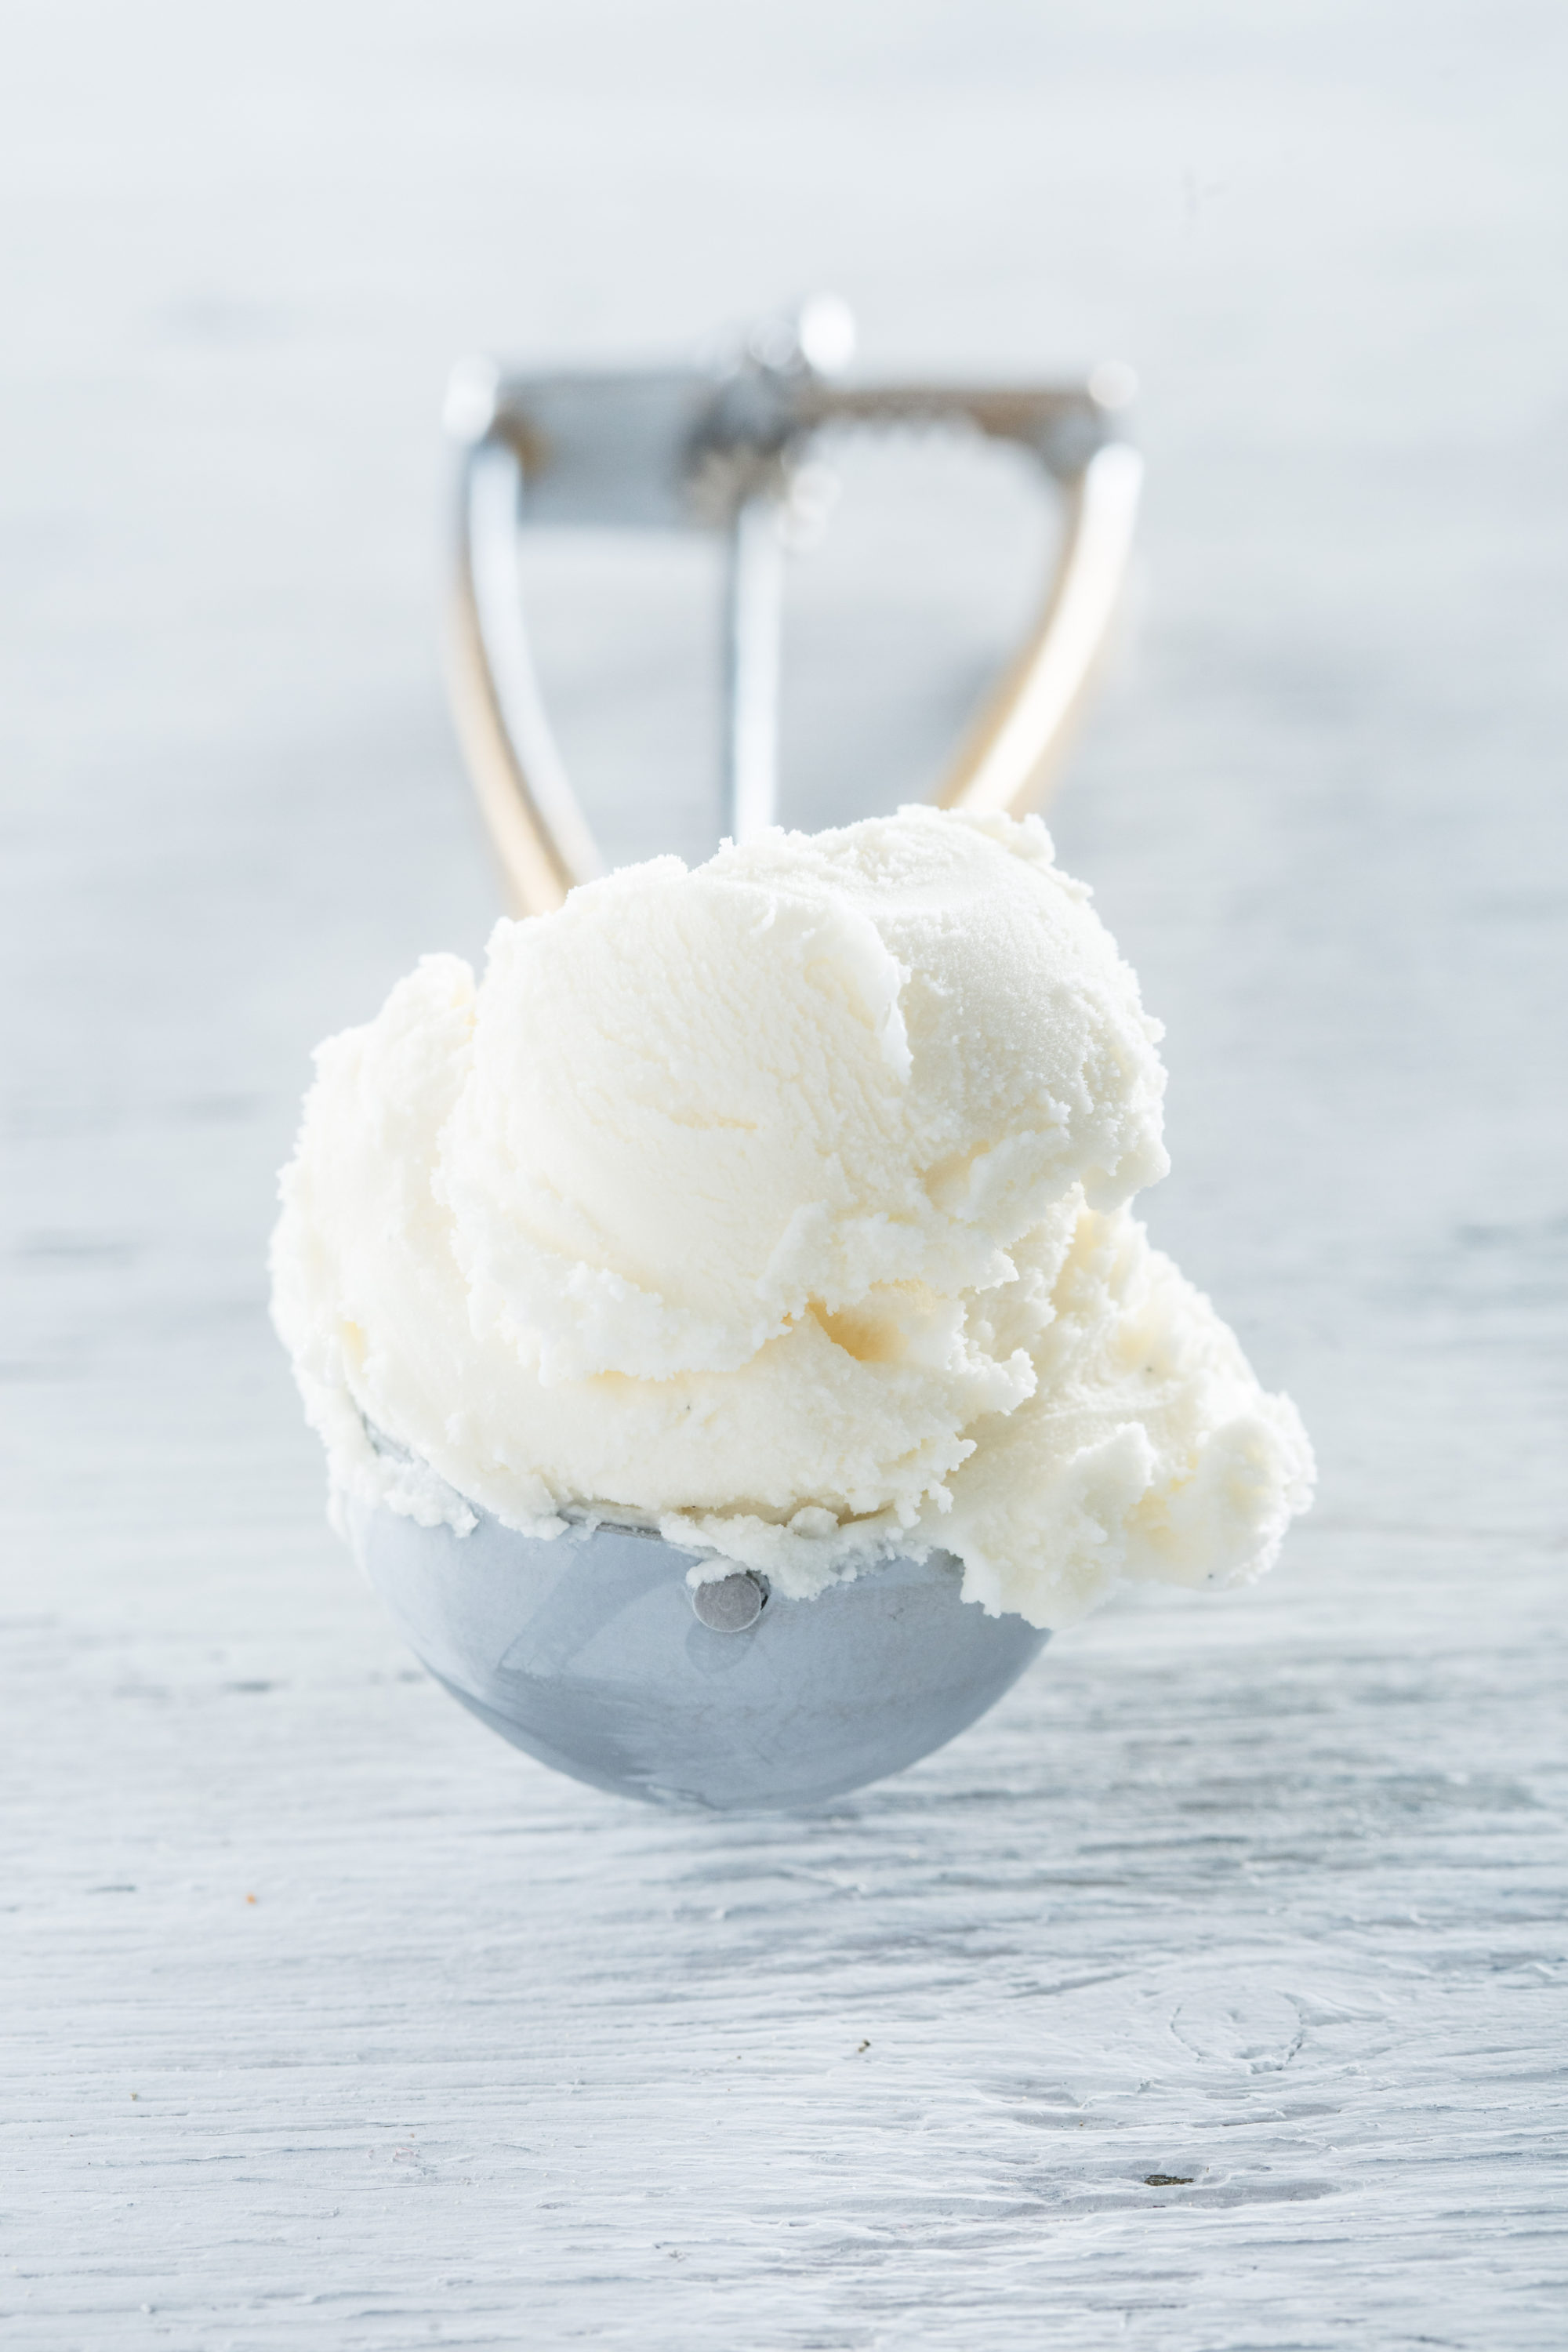 Joseph Banks Bij Aanhoudend Overheerlijk pistache ijs online bestellen op deze webshop.